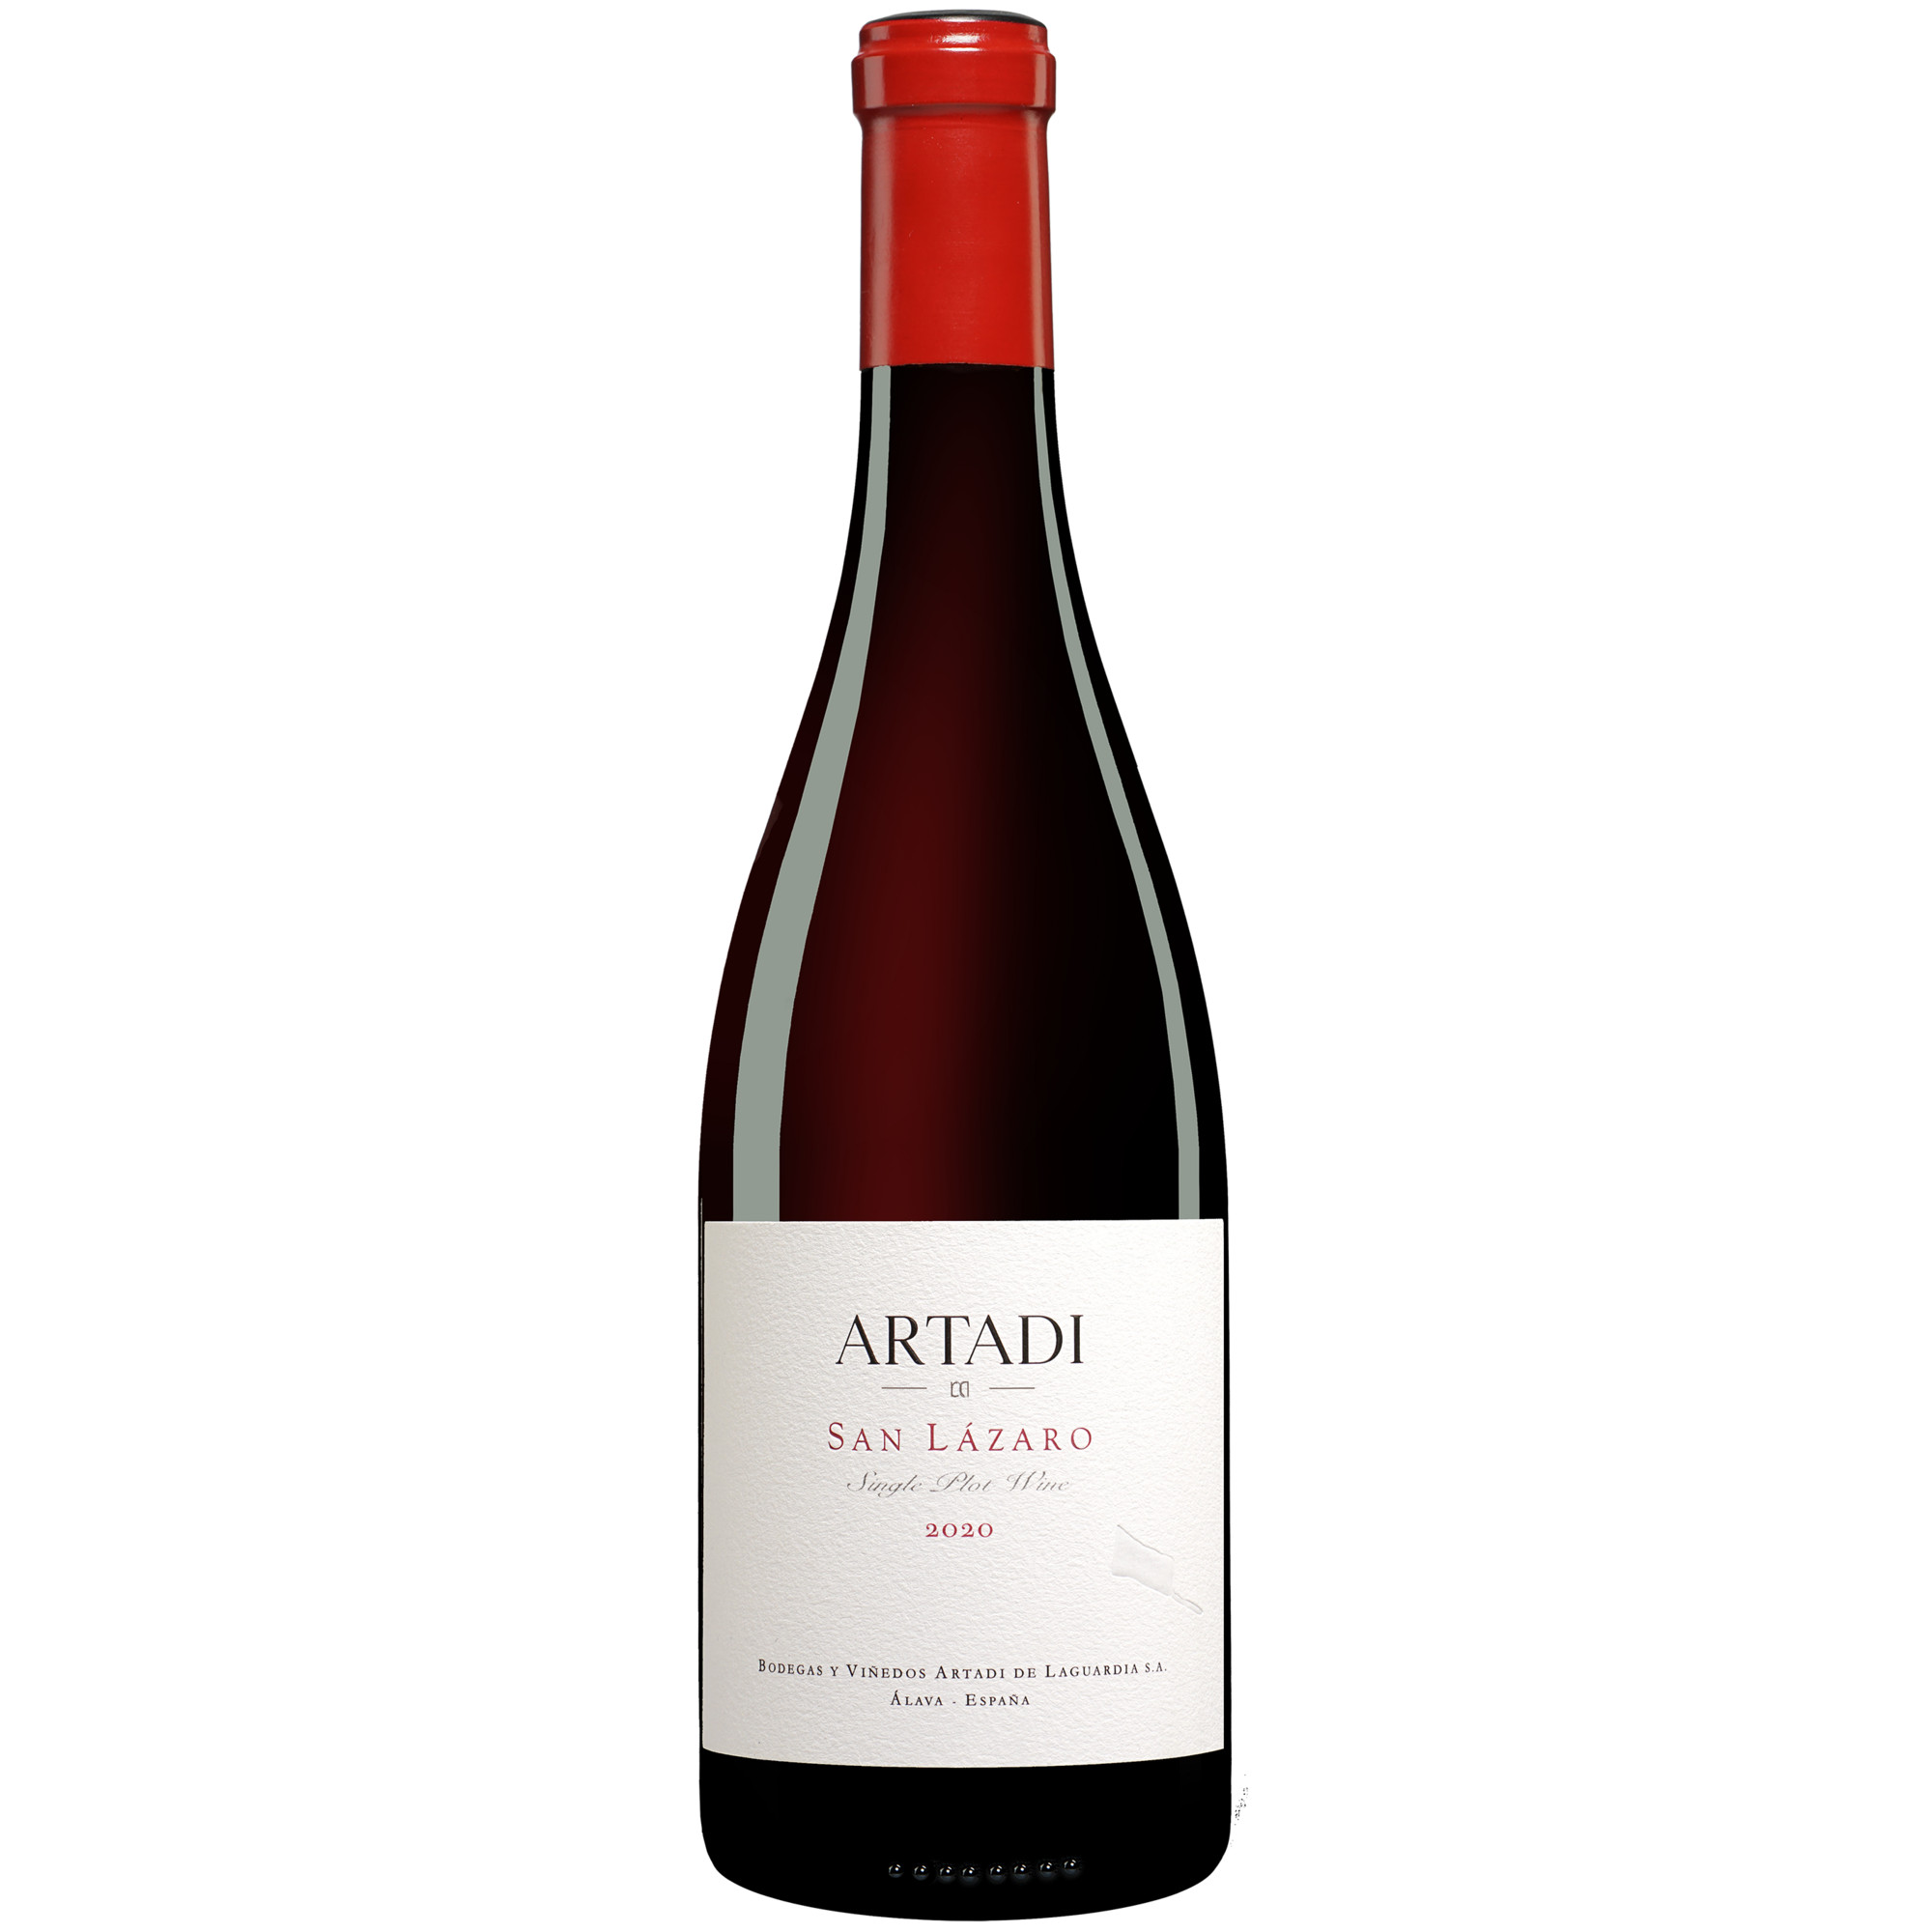 Artadi »San Lázaro« 2020  014.5% Vol. Rotwein Trocken aus Spanien